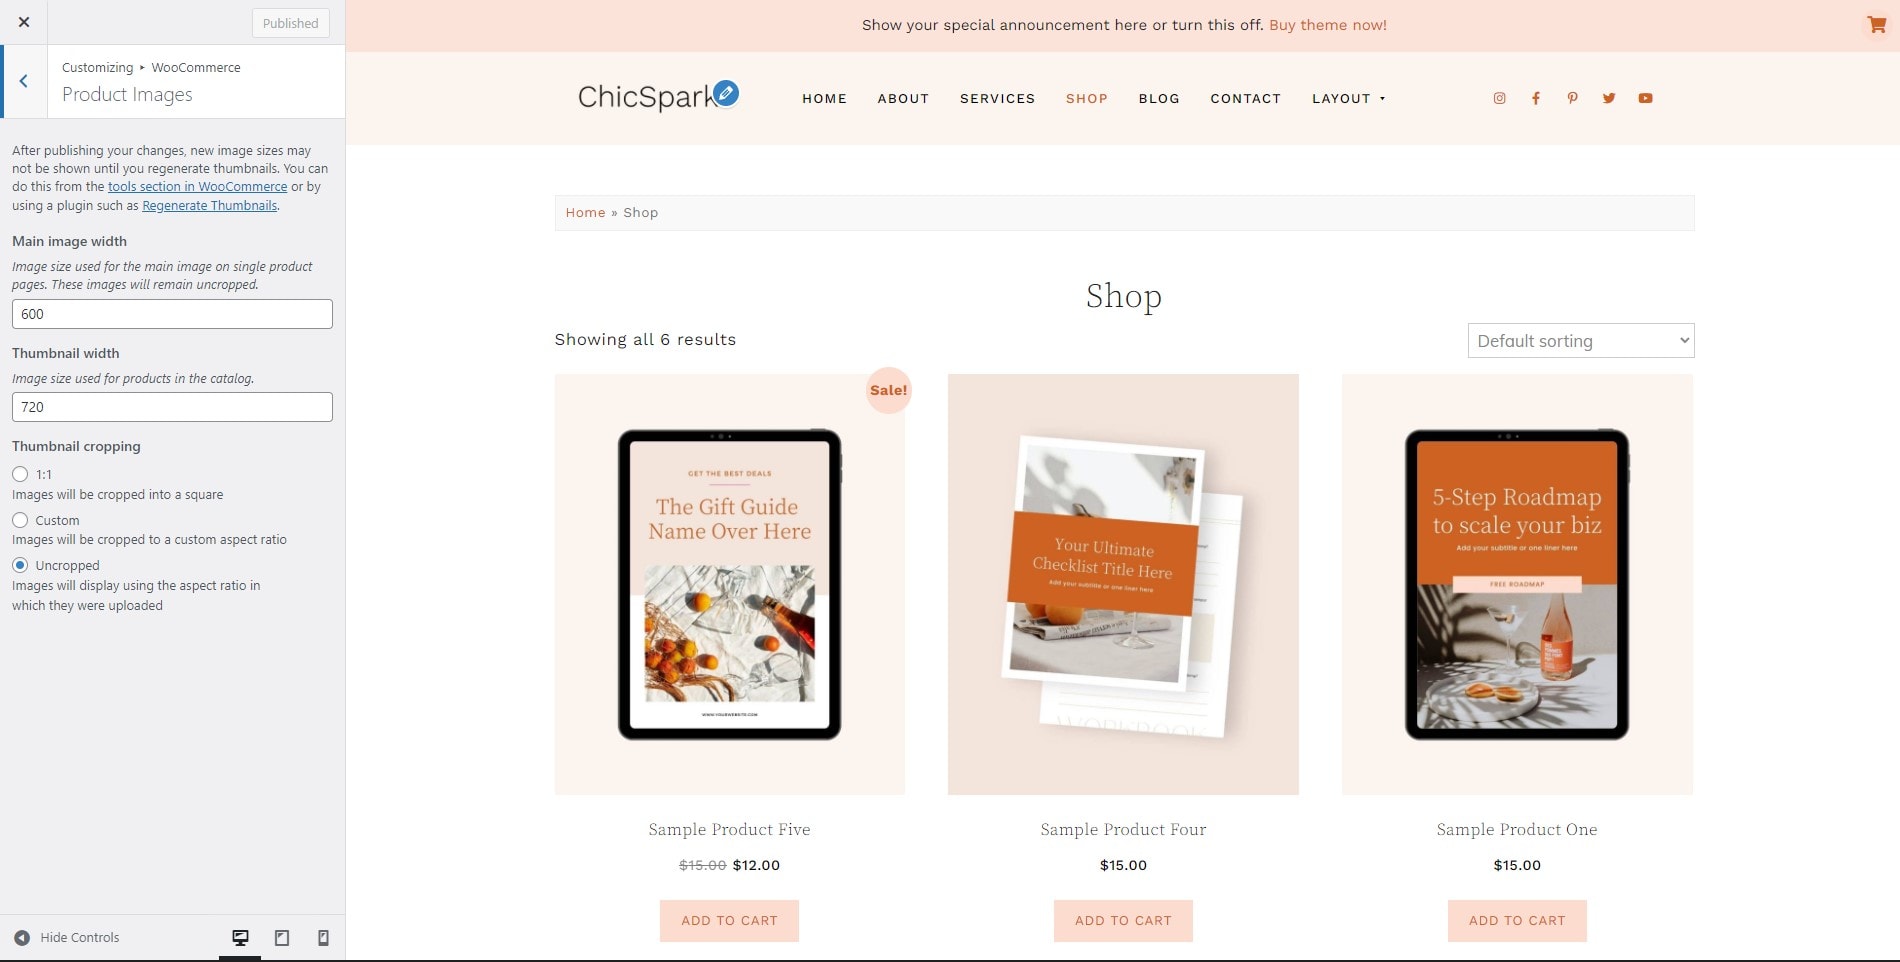 ChicSpark WooCommerce product image sizes